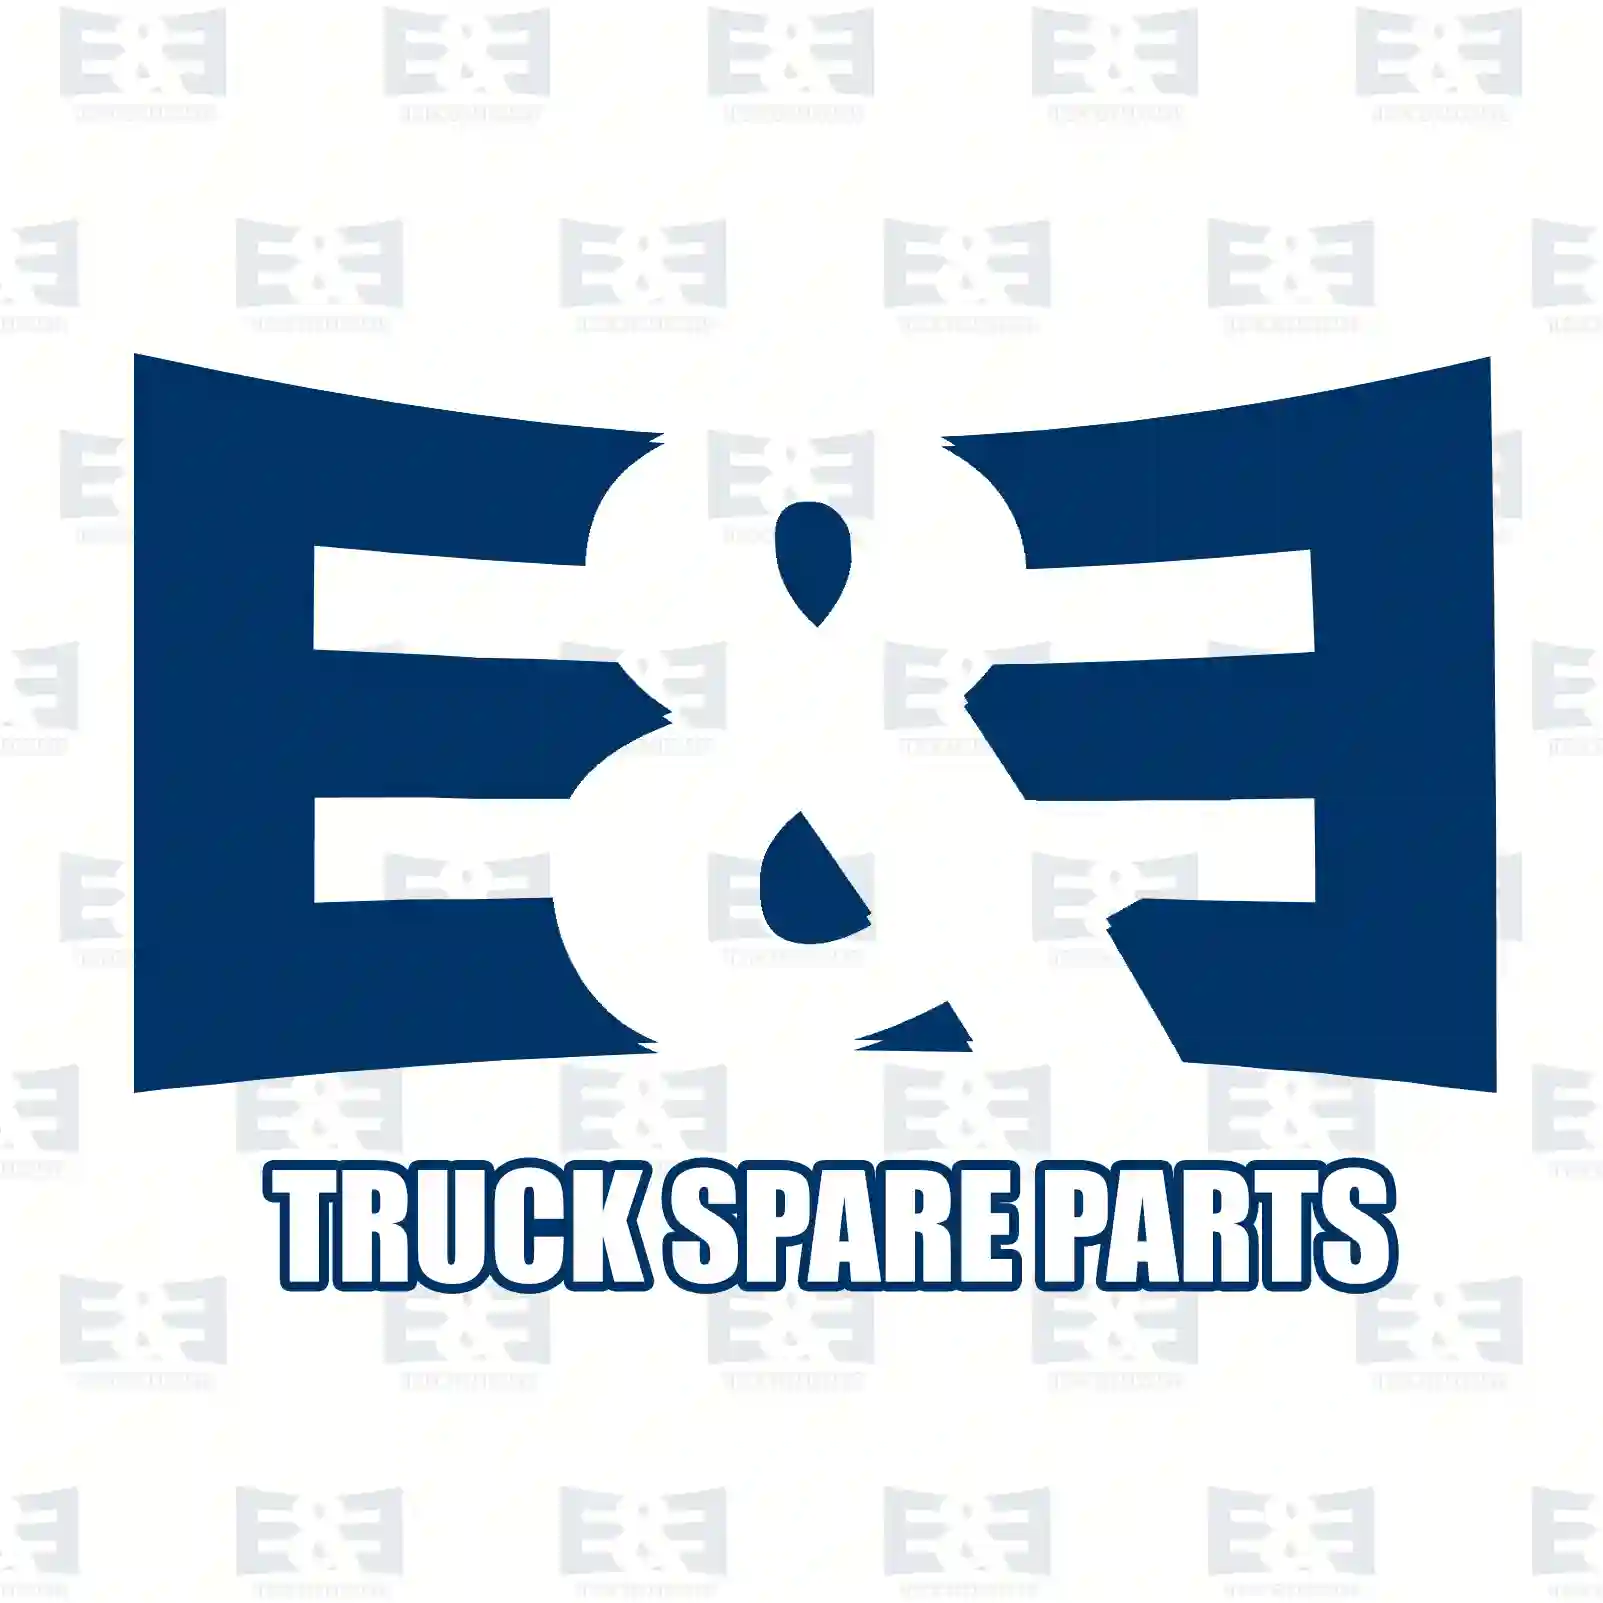 Ignition switch, 2E2298195, 1062207, 1072233, 1352959, 1363940, 1677531, 98AB-11572-BC, 98AB-11572-BE, 98AB-11572-BF, 98AB-11572-BG, AA6T-11572-AA ||  2E2298195 E&E Truck Spare Parts | Truck Spare Parts, Auotomotive Spare Parts Ignition switch, 2E2298195, 1062207, 1072233, 1352959, 1363940, 1677531, 98AB-11572-BC, 98AB-11572-BE, 98AB-11572-BF, 98AB-11572-BG, AA6T-11572-AA ||  2E2298195 E&E Truck Spare Parts | Truck Spare Parts, Auotomotive Spare Parts